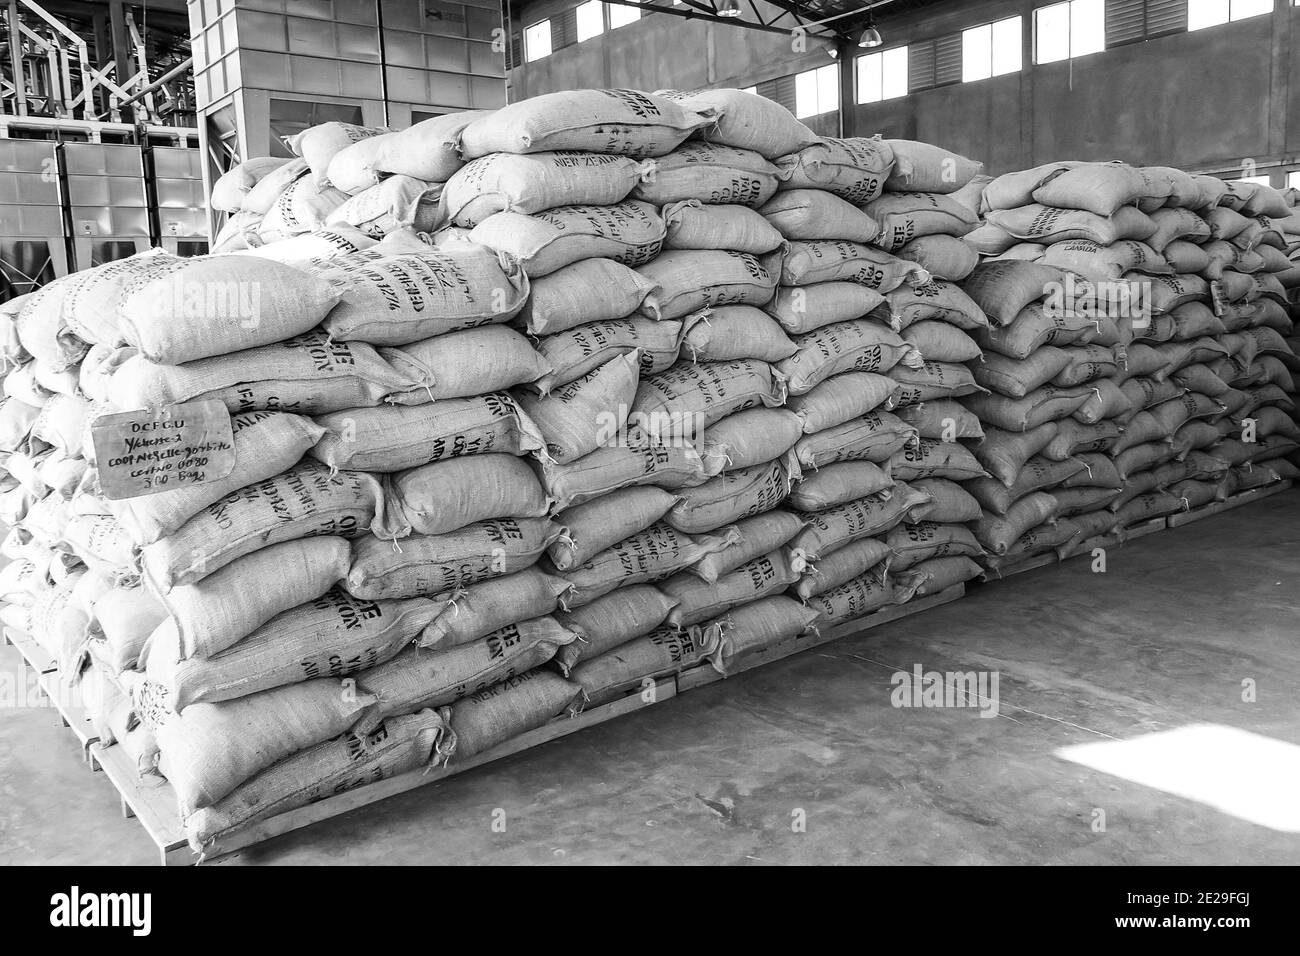 ADDIS ABABA, ETHIOPIE - 05 janvier 2021: Addis Ababa, Ethiopie - 30 2014 janvier: Grands sacs de grains de café dans un entrepôt Banque D'Images